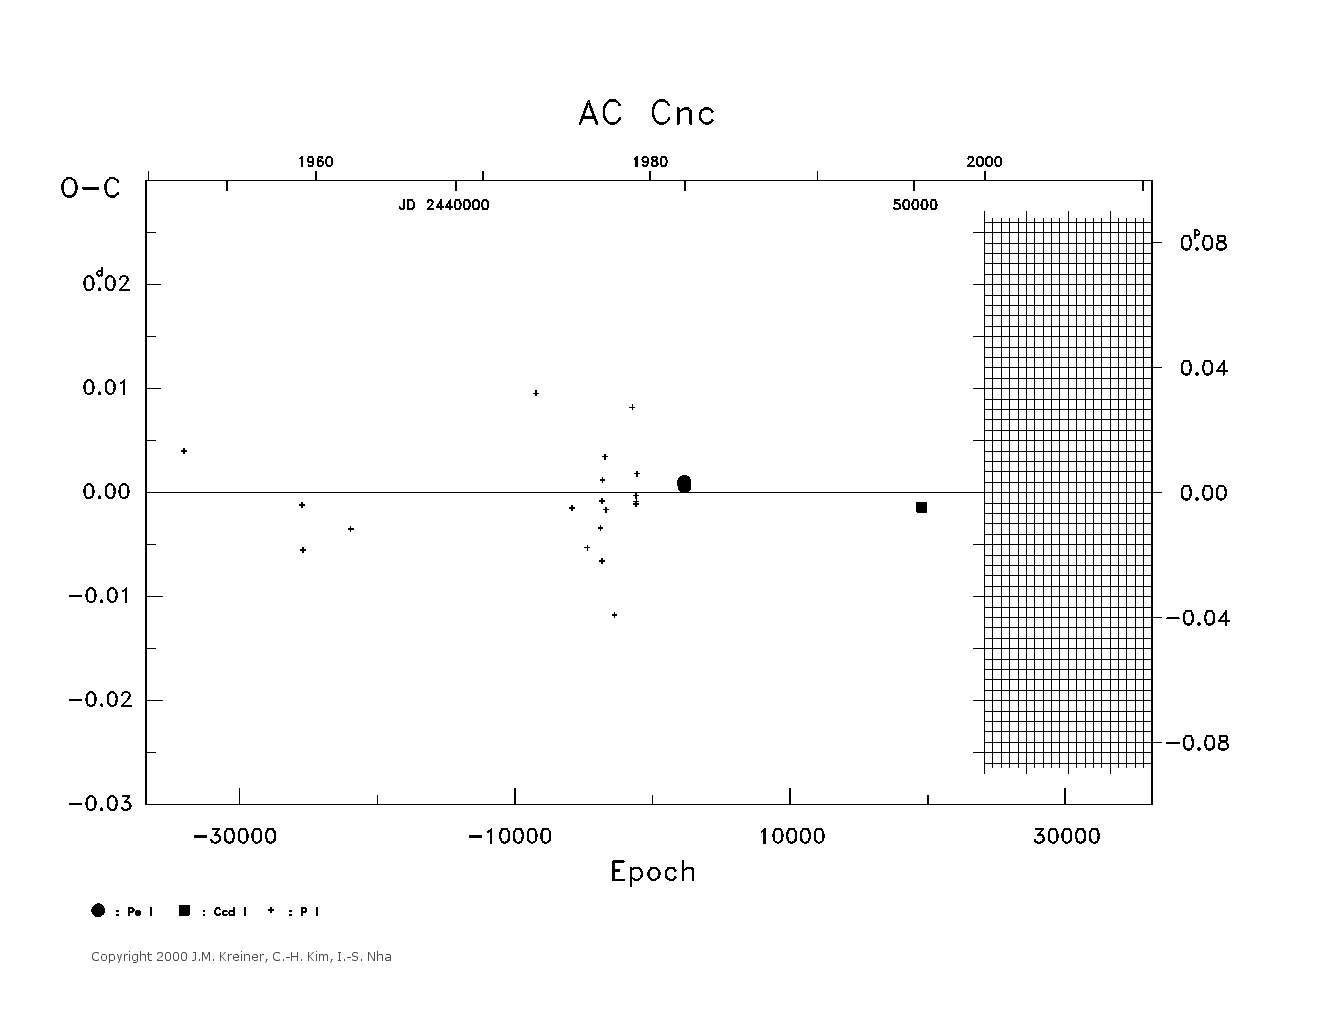 [IMAGE: large AC CNC O-C diagram]